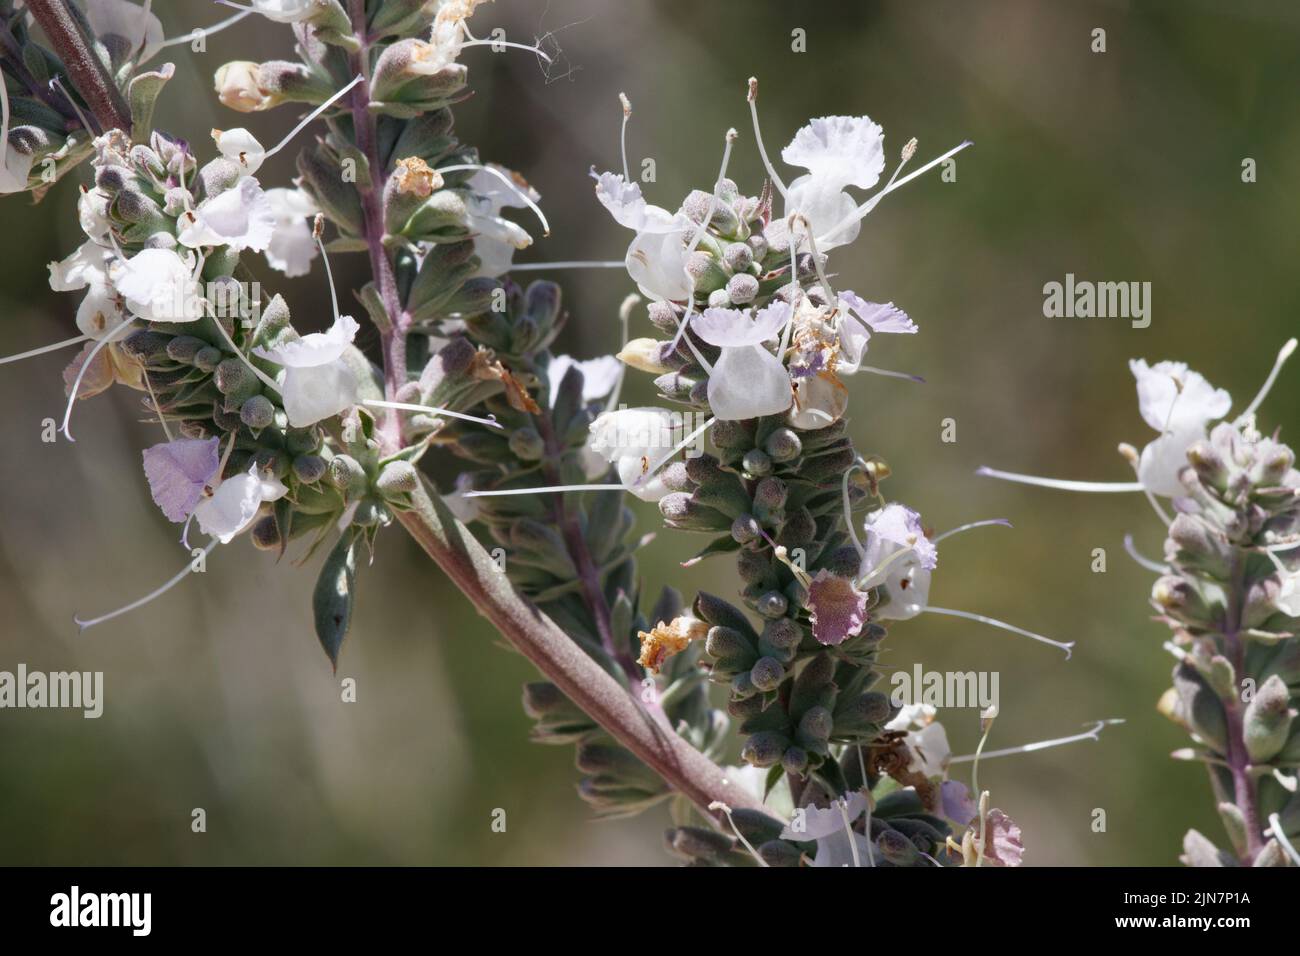 Inflorescencias de cabeza de cimosa blanca con flores de Salvia Apiana, Lamiaceae, arbusto nativo en las Montañas de San Gabriel, Cordillera Transversal, Primavera. Foto de stock